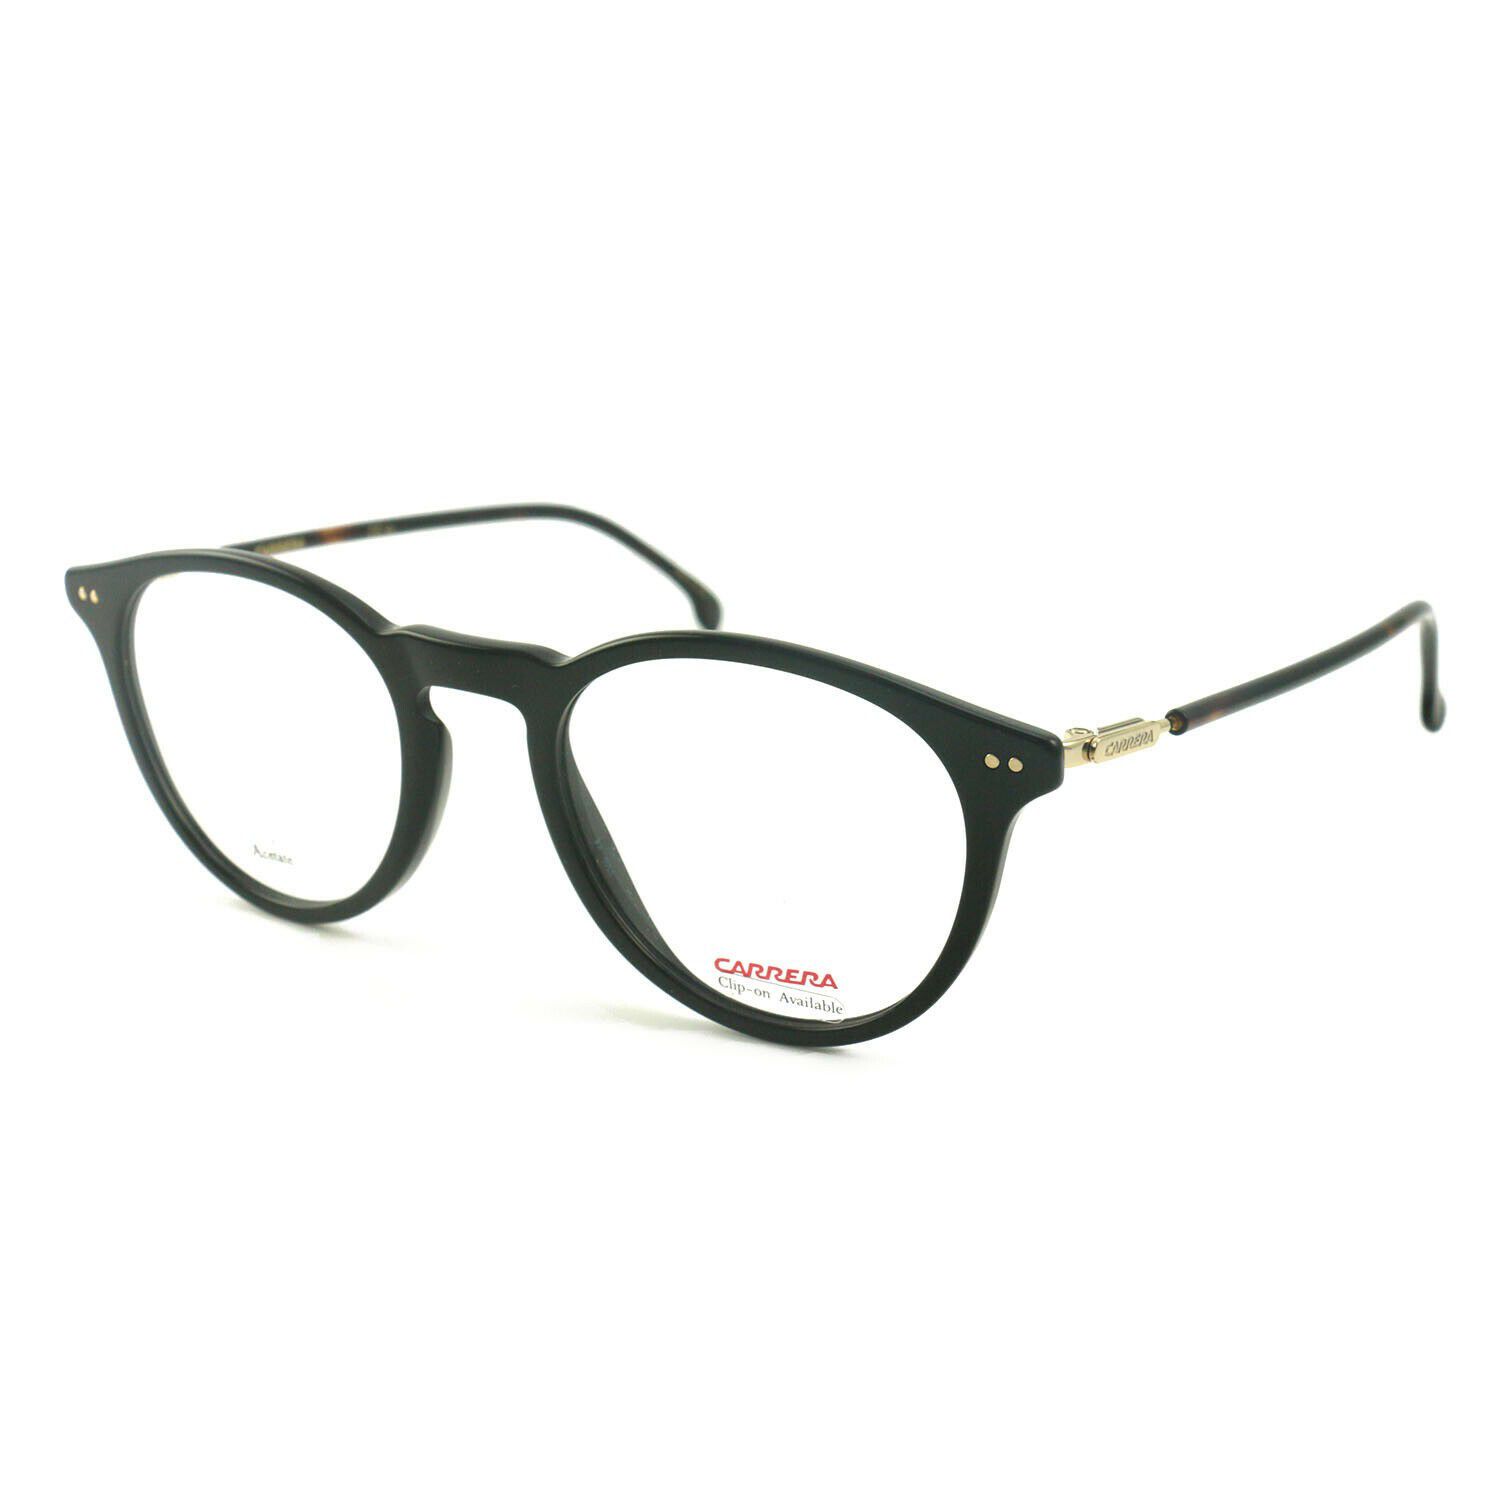 Carrera Women Eyeglasses RR 145V WR7 Black/Havana Full Rim 49 21 145